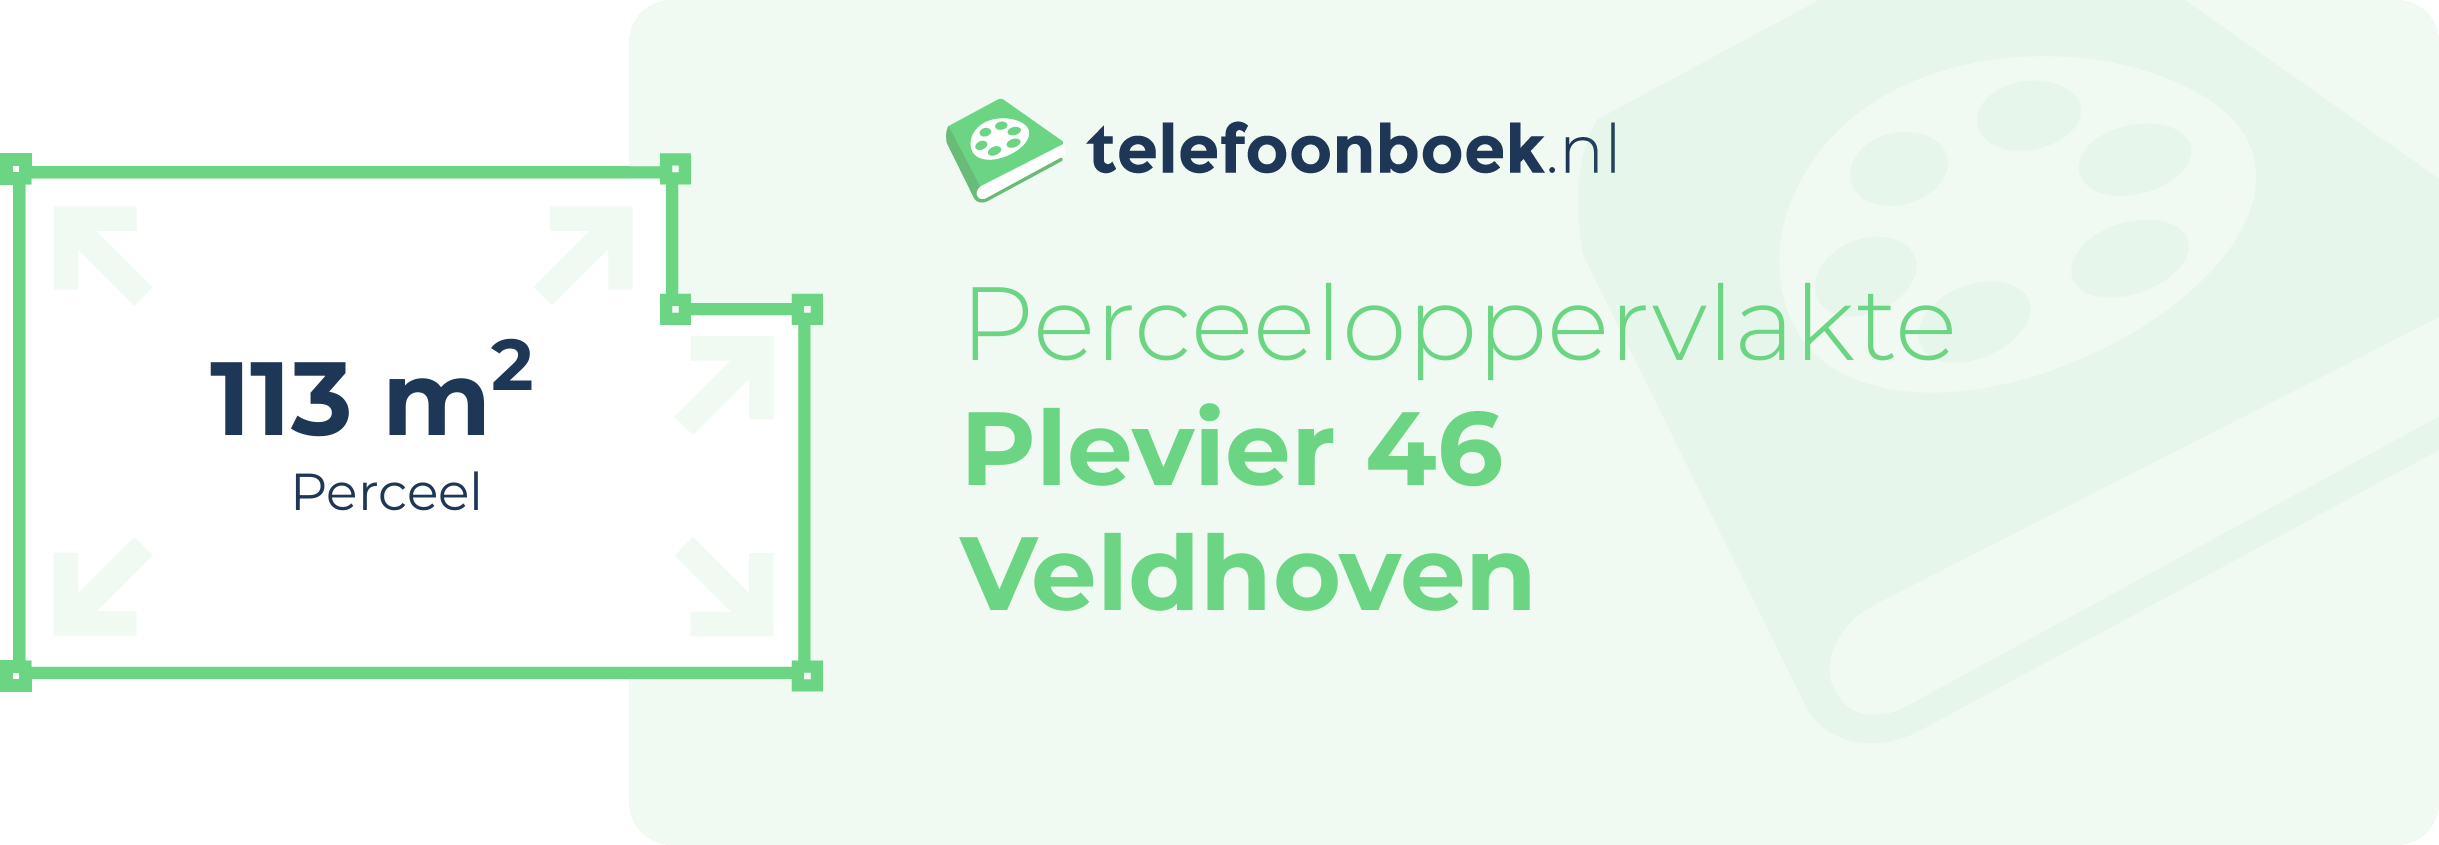 Perceeloppervlakte Plevier 46 Veldhoven